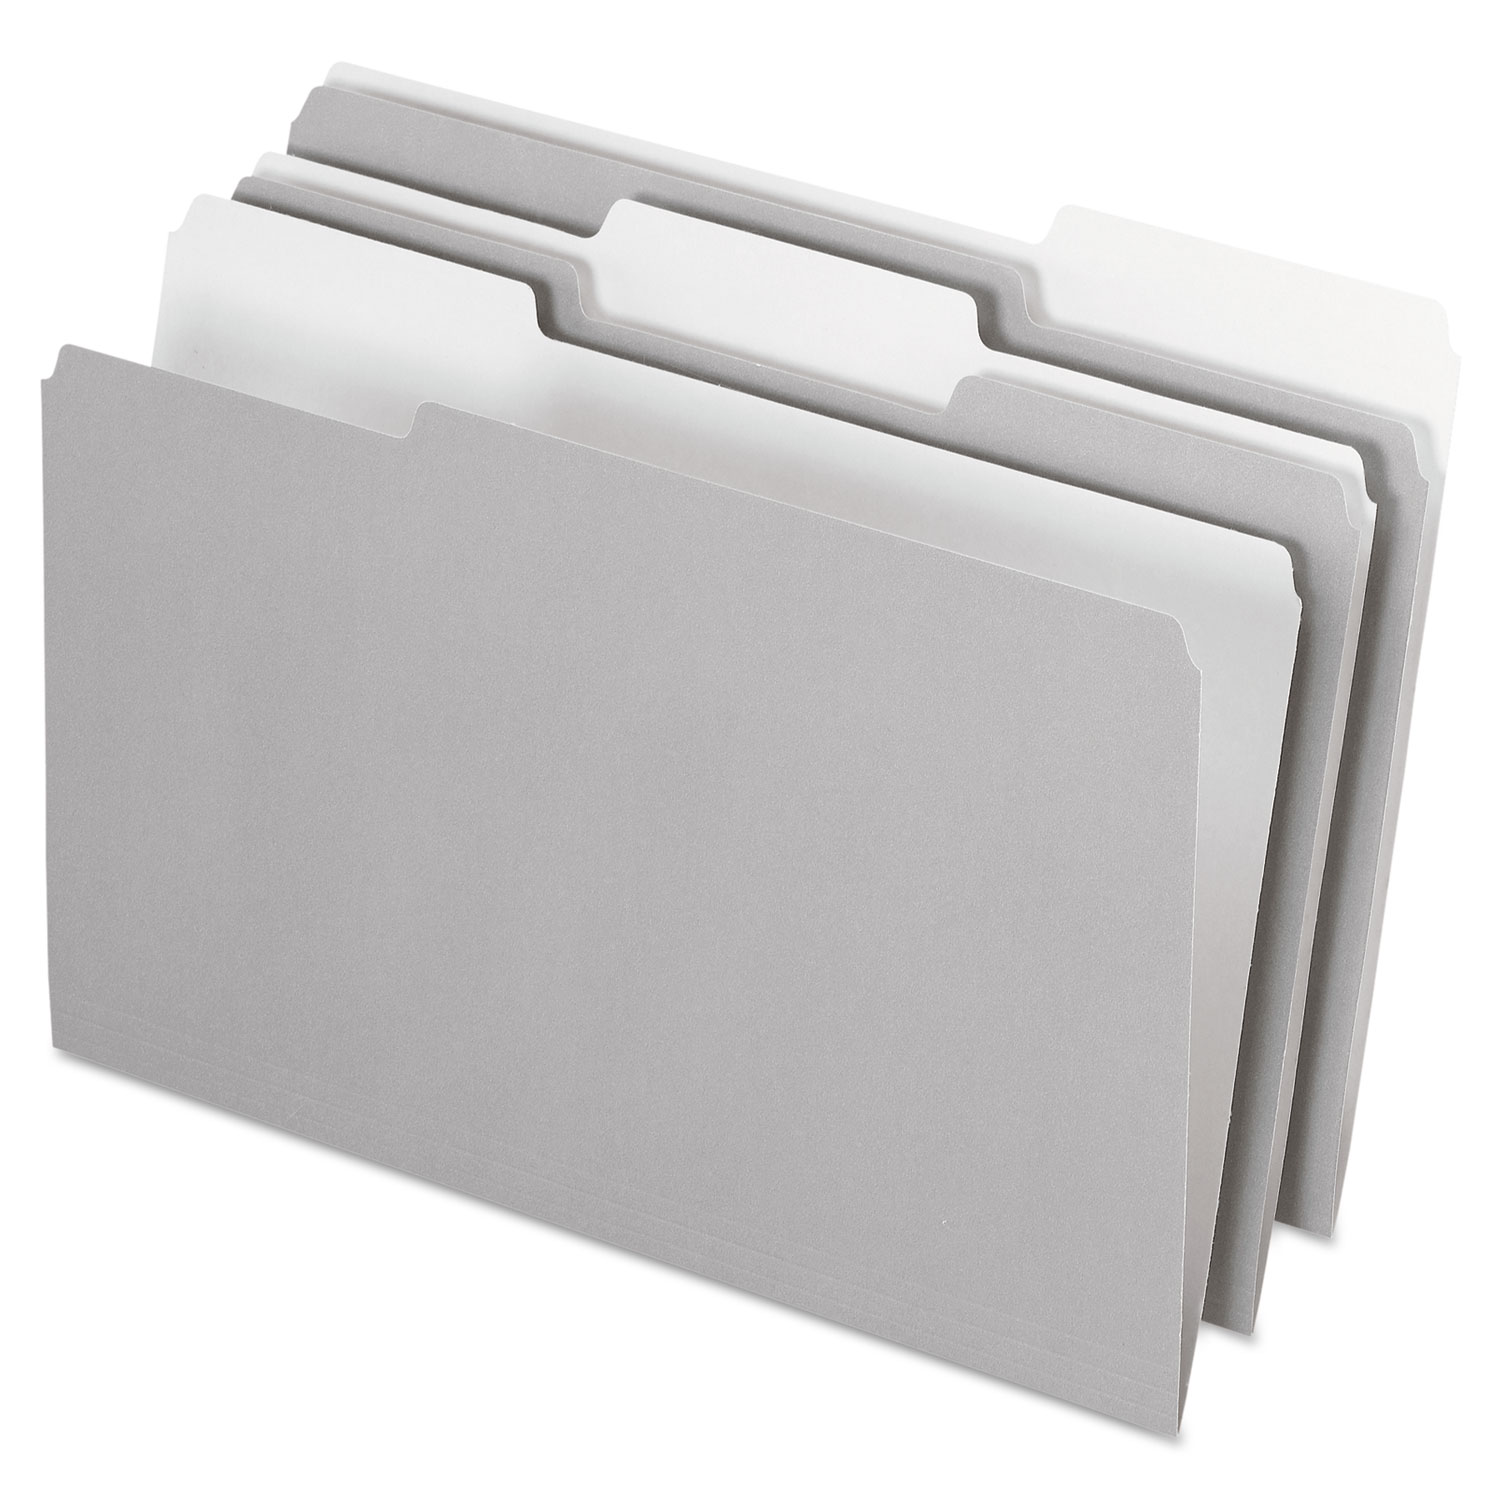 Interior File Folders, 1/3 Cut Top Tab, Legal, Gray, 100/Box